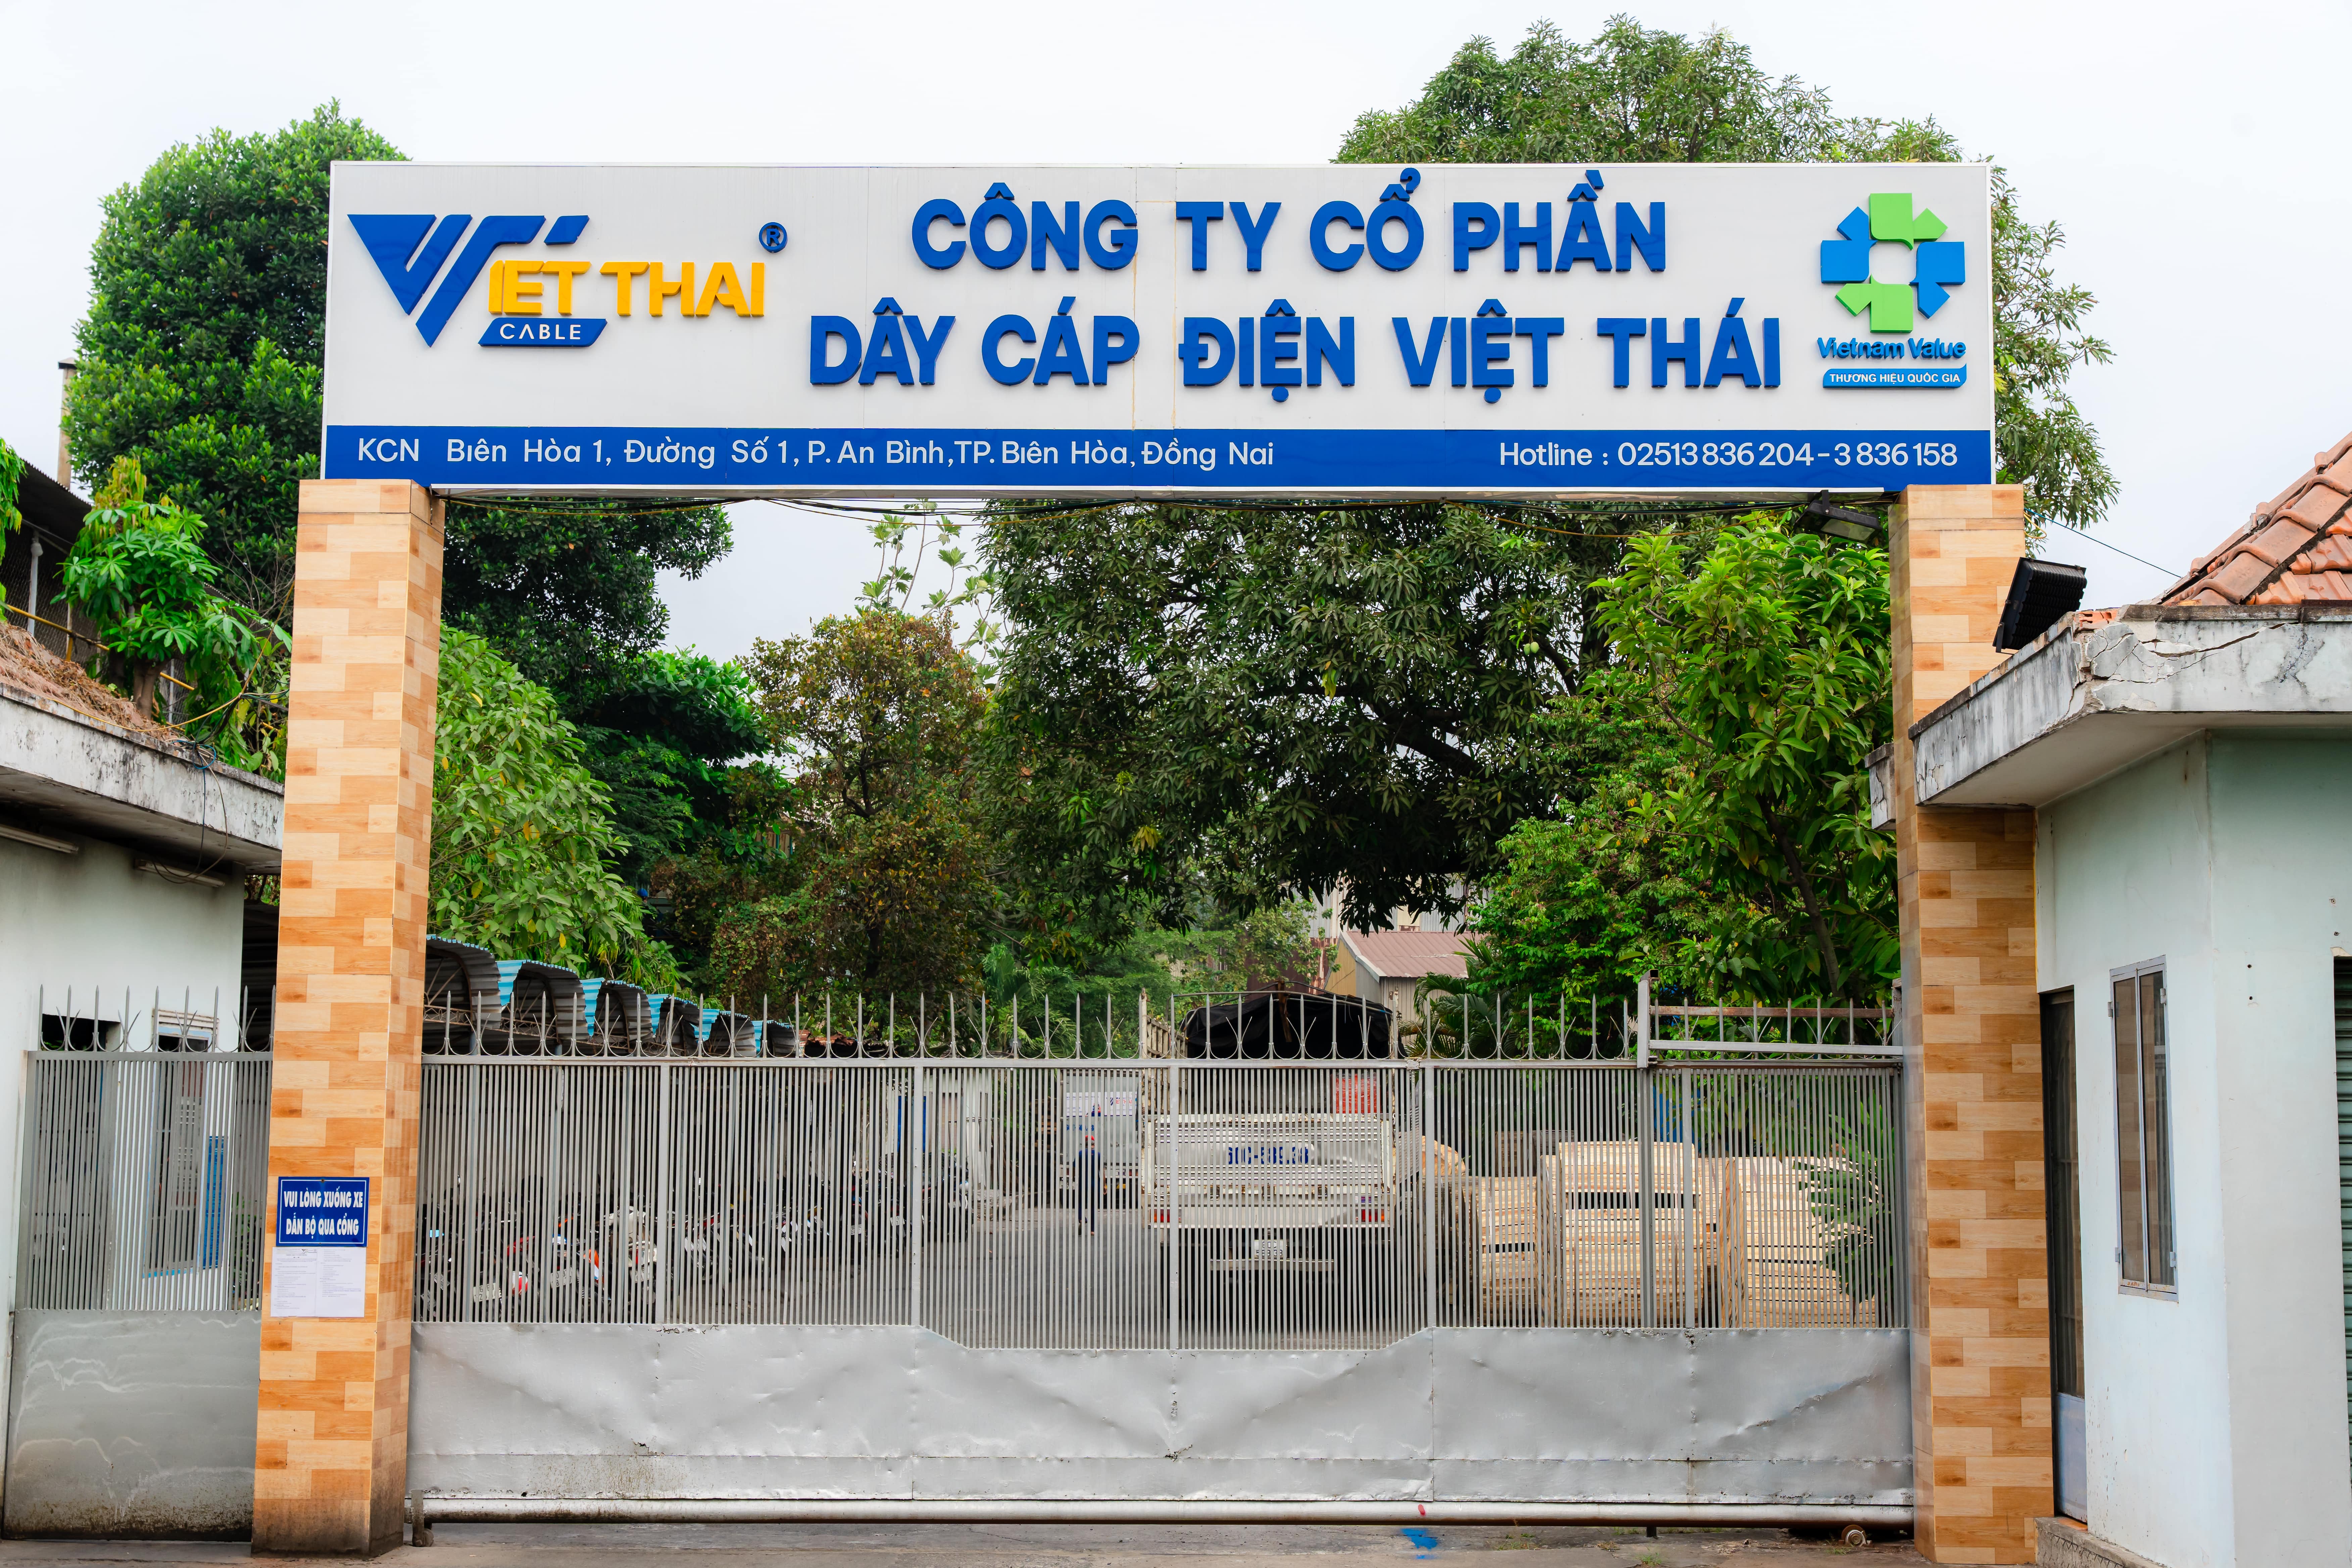 Đội ngũ Sale Admin của Việt Thái - Năng động, chuyên nghiệp và tận tâm